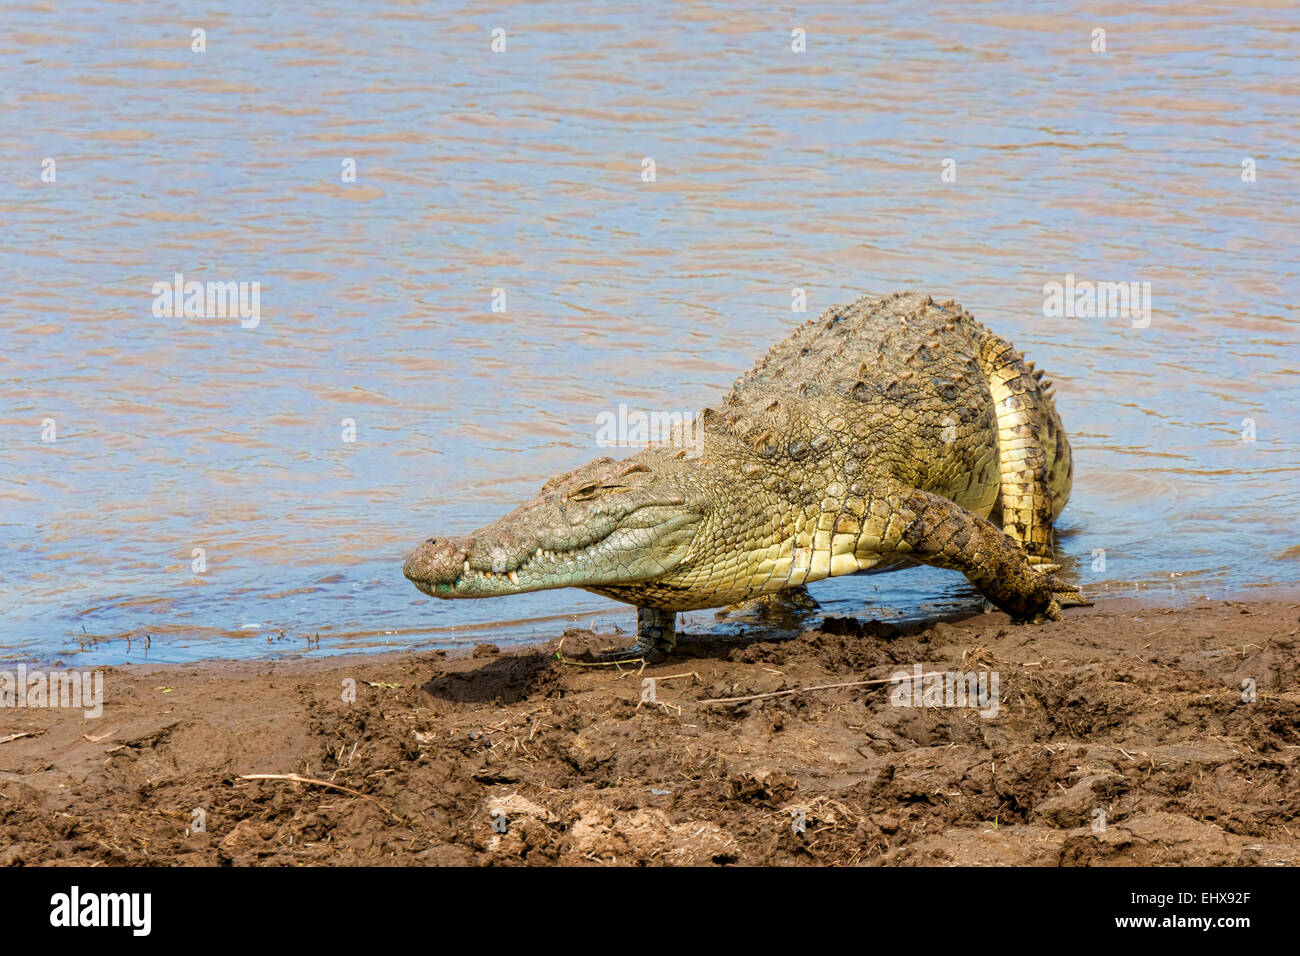 El cocodrilo del Nilo (Crocodylus niloticus), el río Mara, la Reserva Nacional de Masai Mara, Kenya Foto de stock